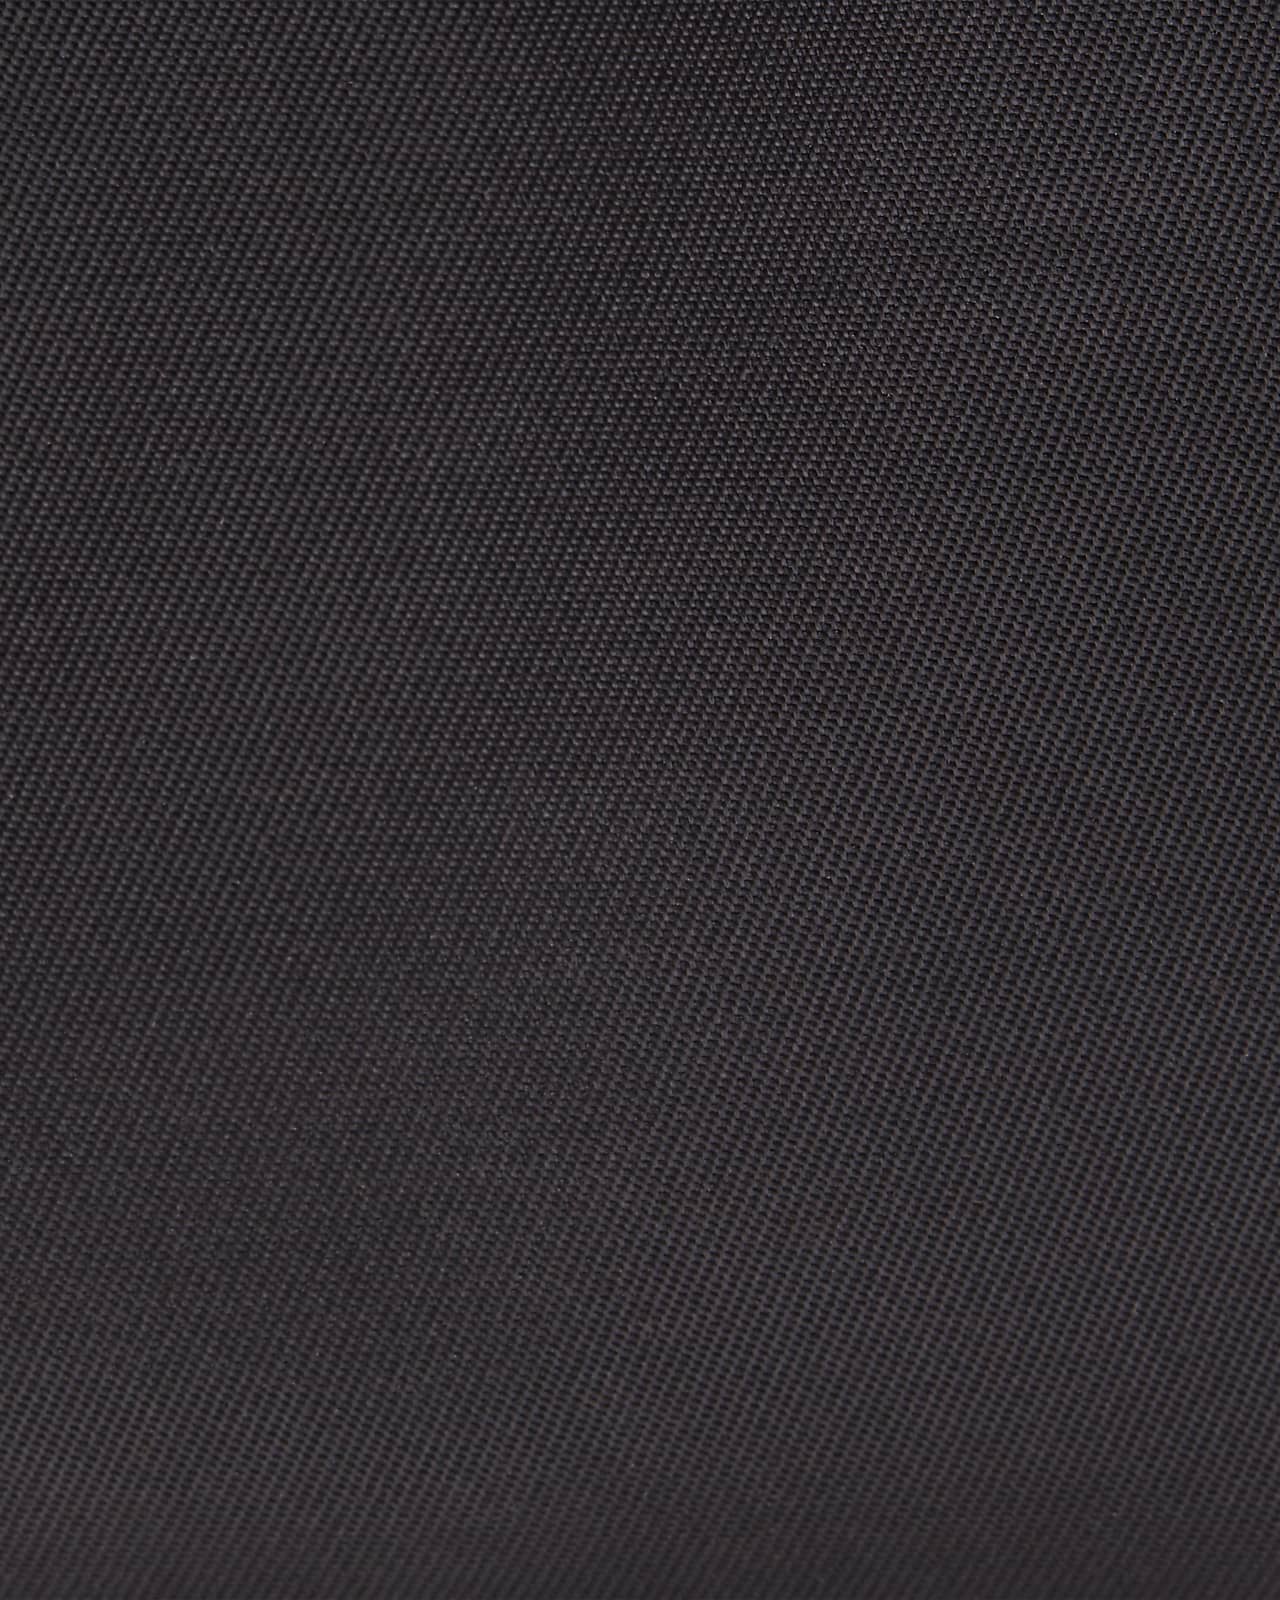 Nike Sportswear Futura Luxe Crossbody Bag in Black – Oneness Boutique